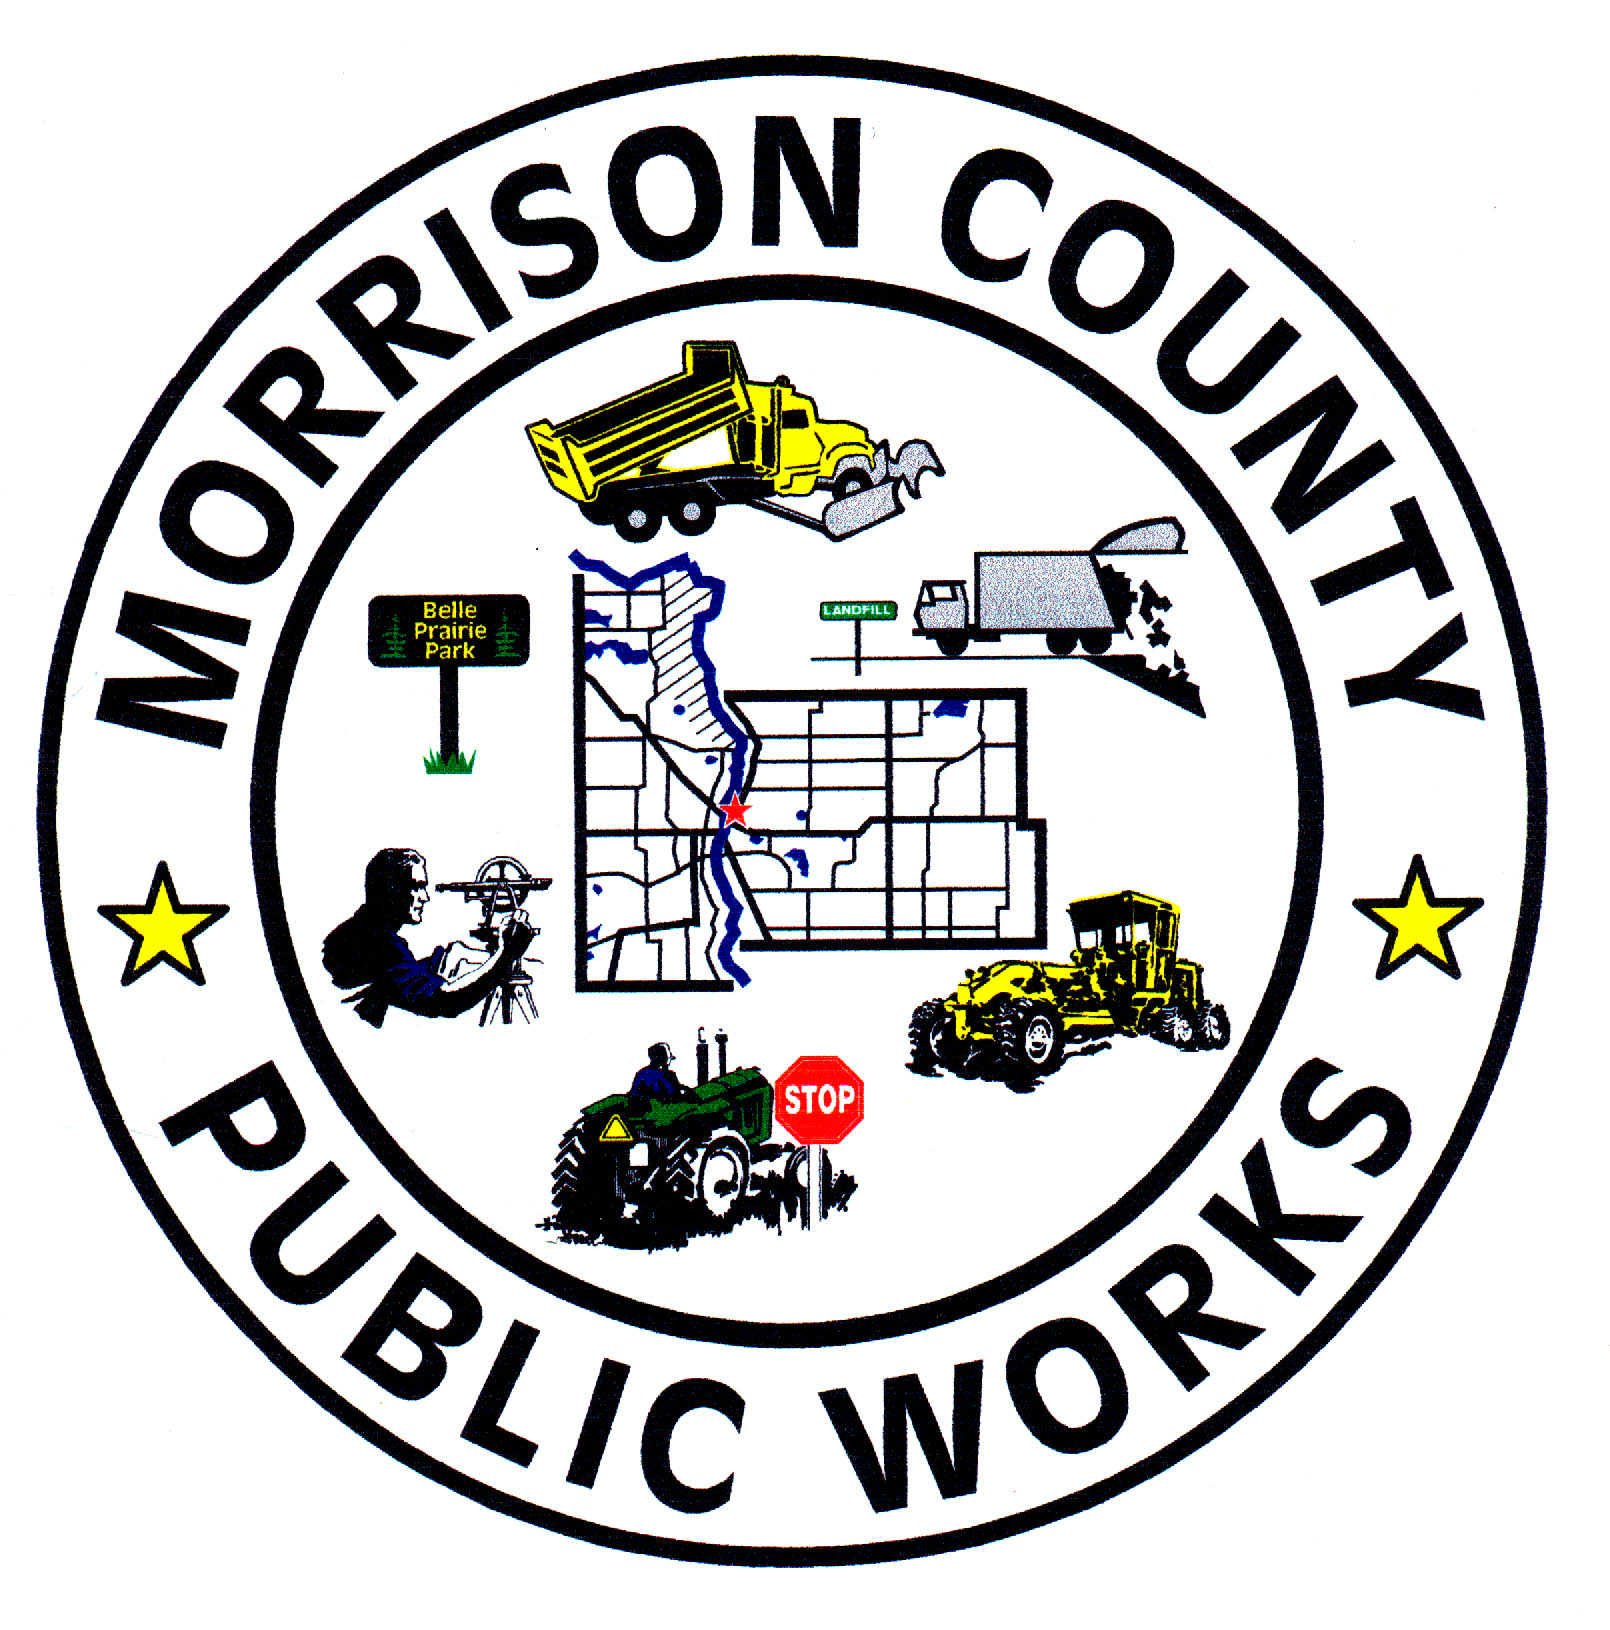 Morrison County OneGov